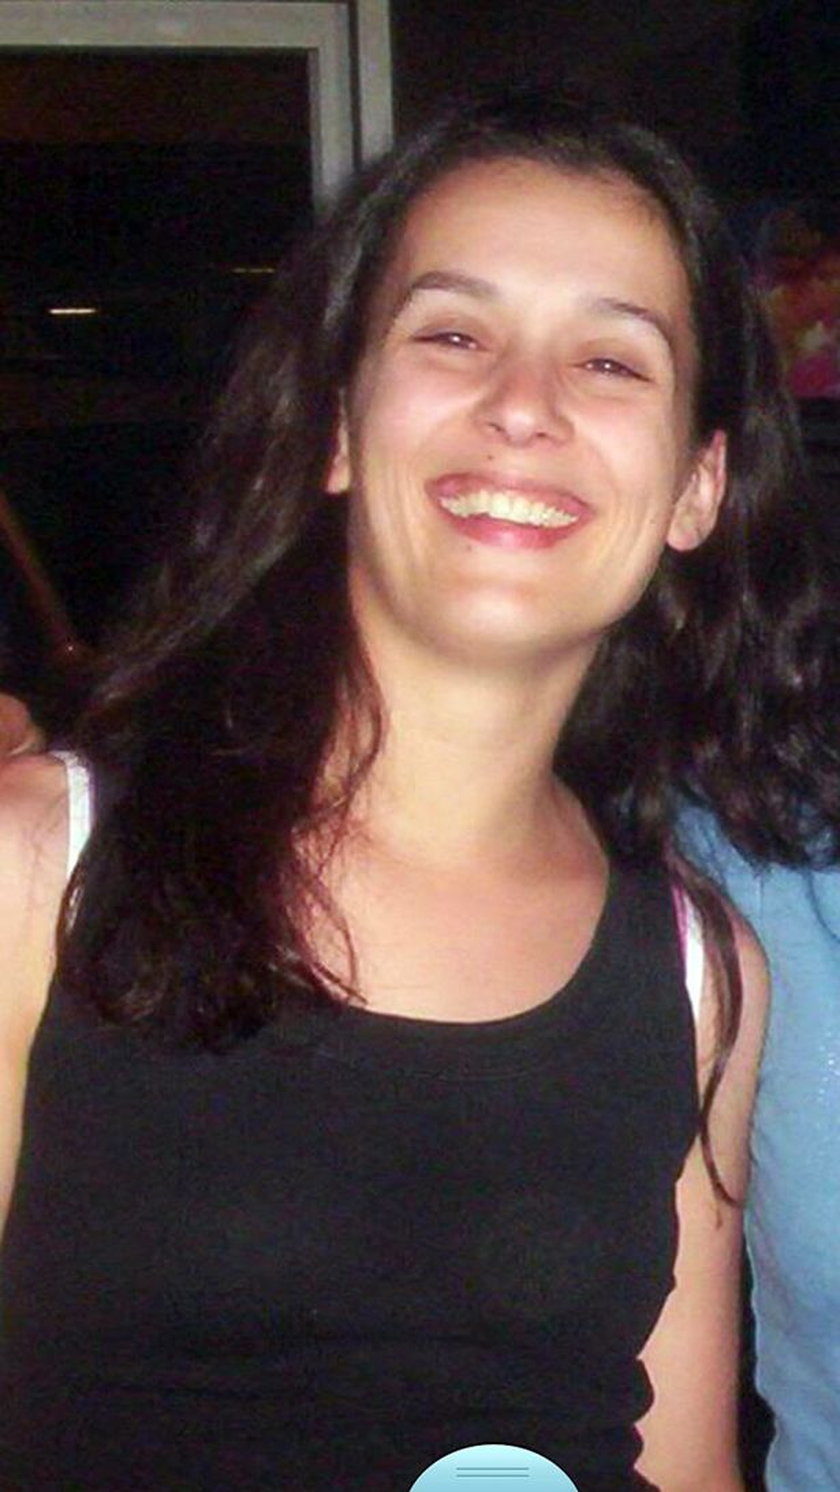 Luisa Guerra